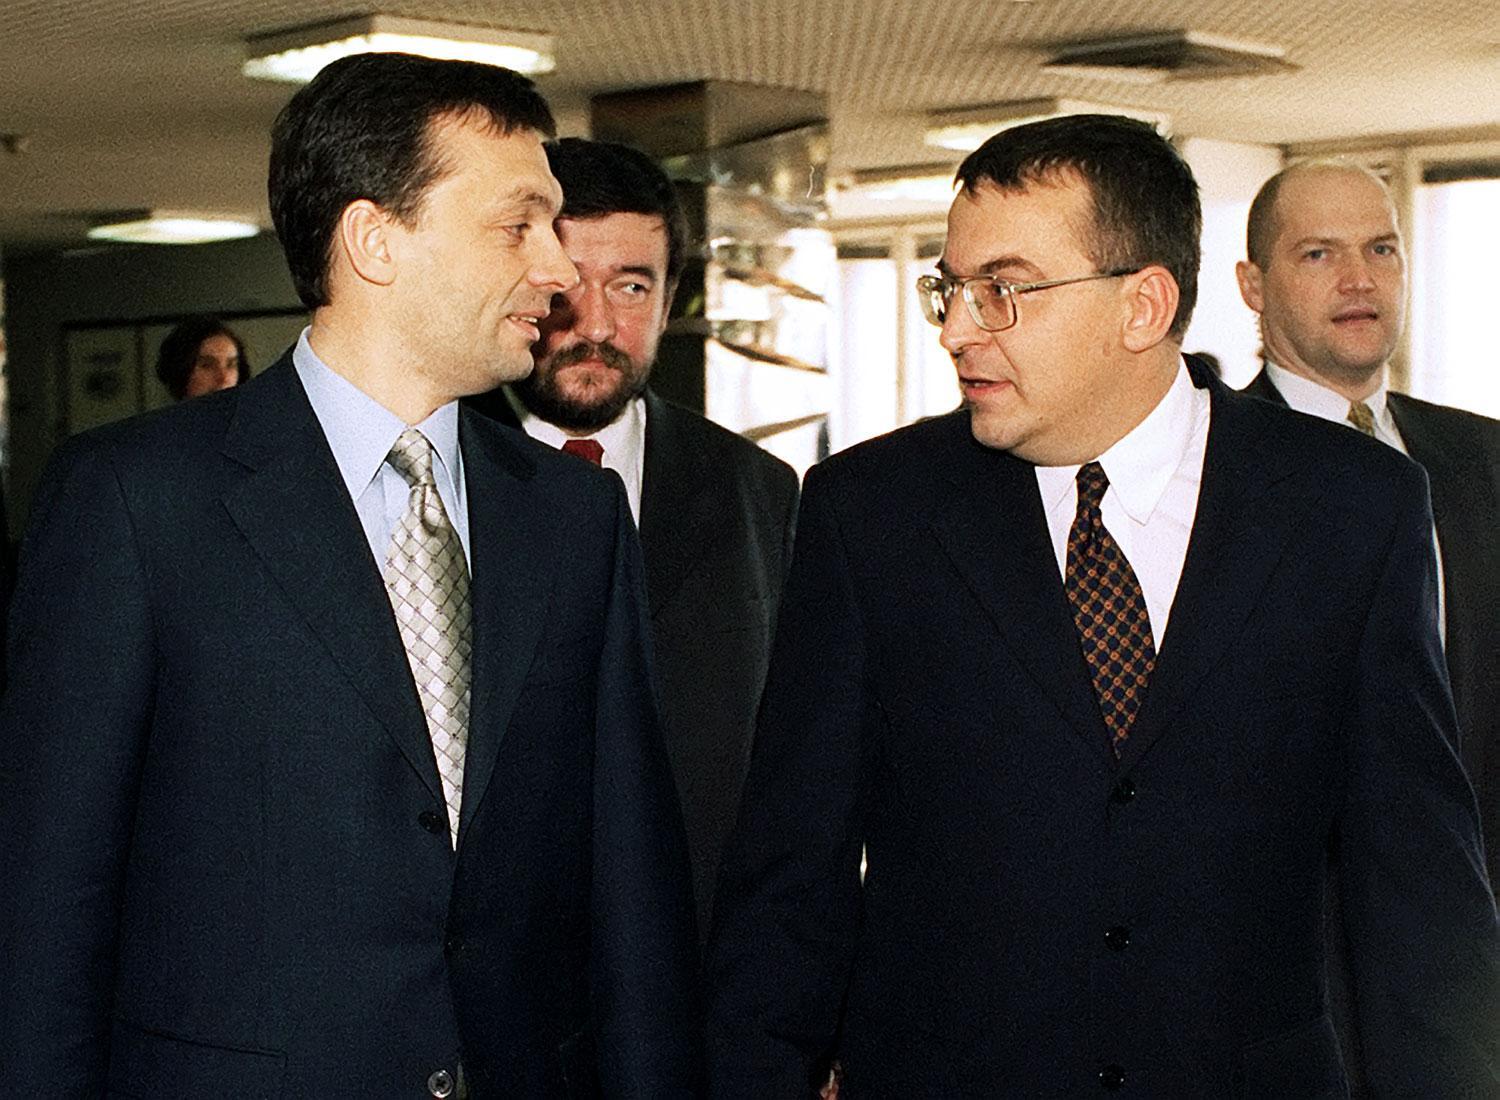 Az utolsó közös felvétel. Orbán Viktor és Simicska Lajos 1999-ben, amikor a miniszterelnök egykori kollégiumi szobatársa volt az APEH elnöke 